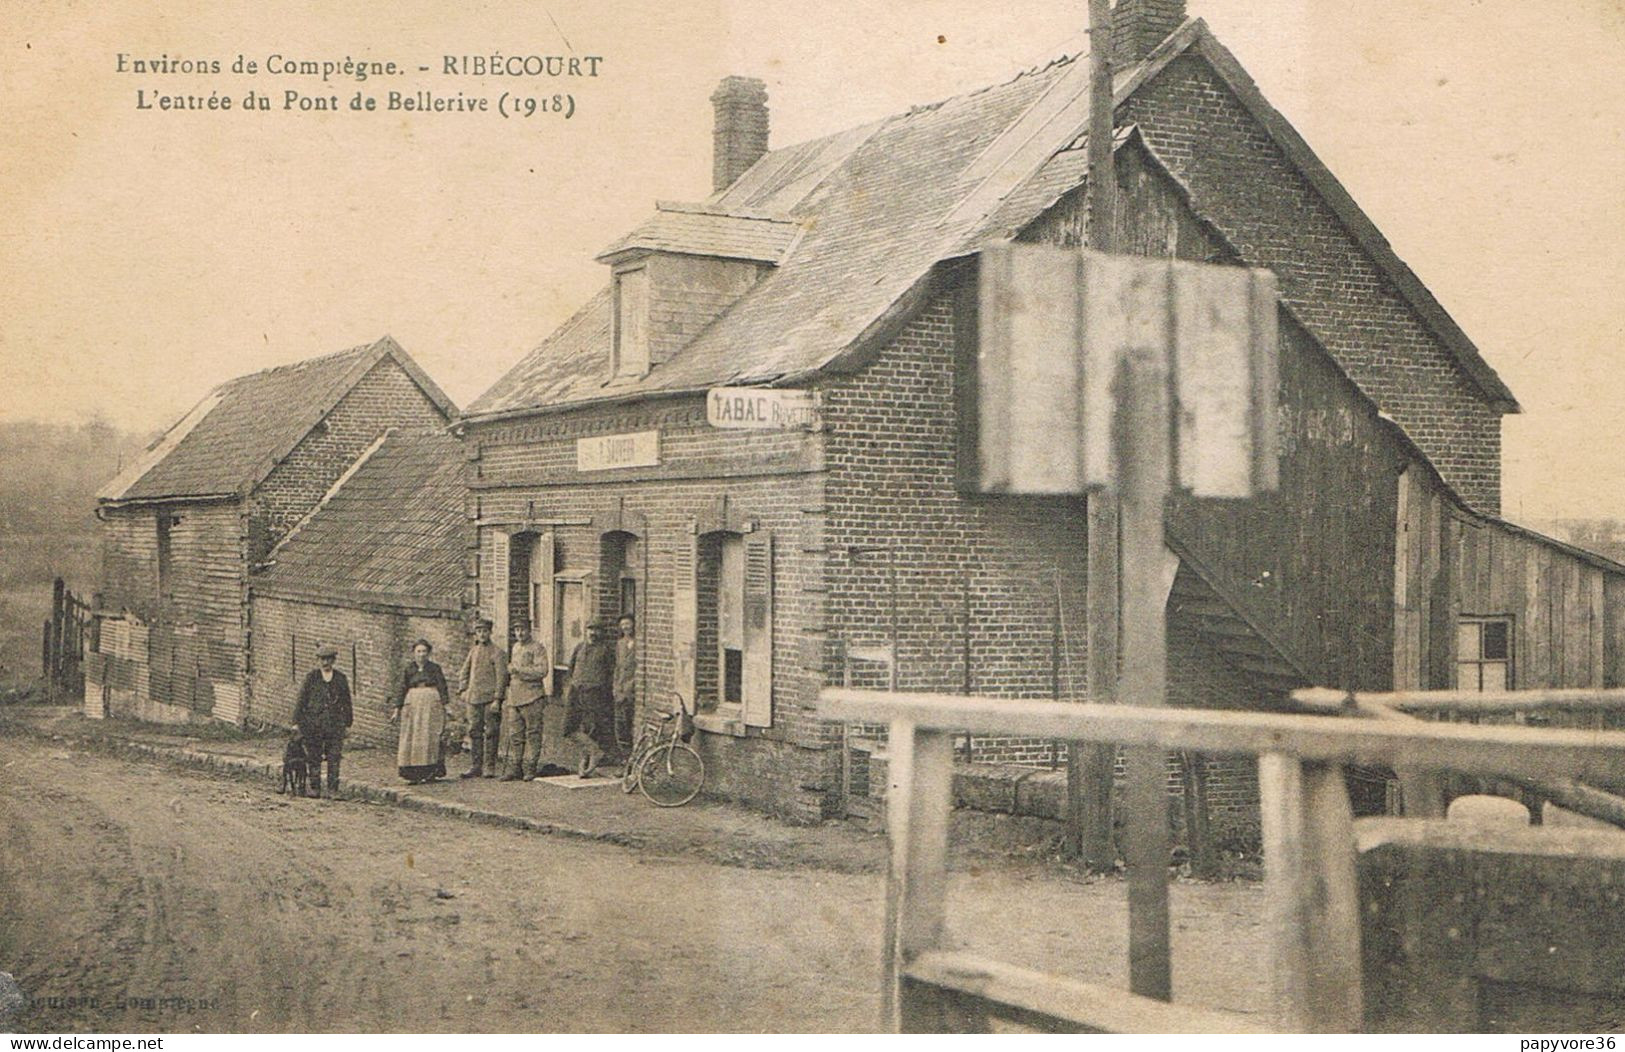 RIBECOURT (Oise) - L'Entrée Du Pont De Bellerive - 1918 - Tabac - Buvette P. SAUVEUR - Animée - Ribecourt Dreslincourt